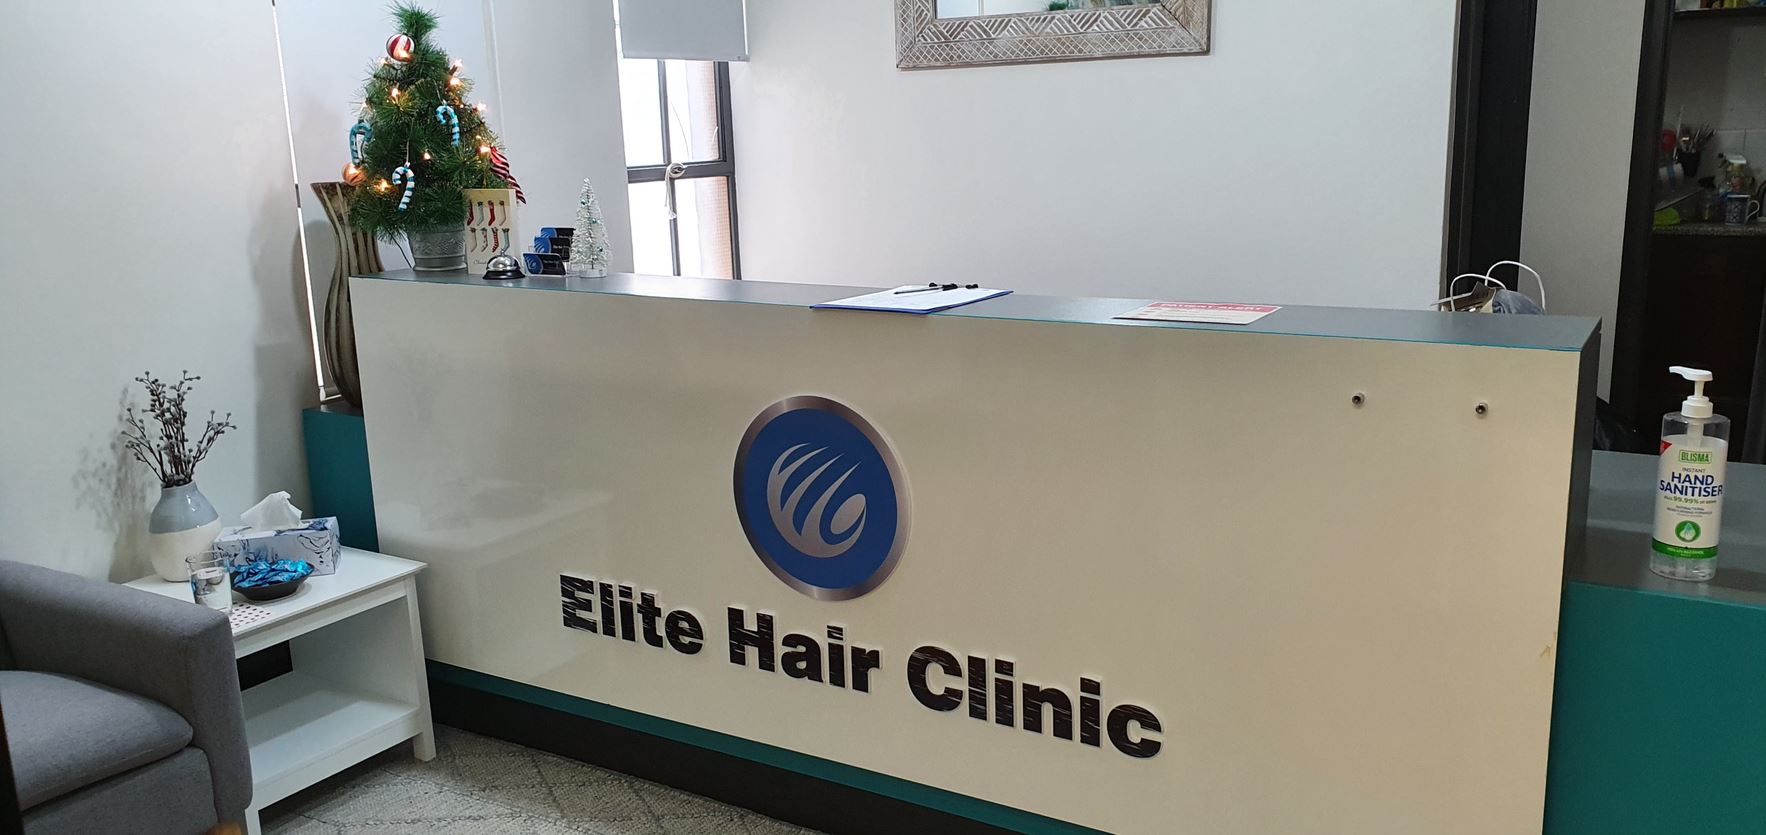 Elite Hair Clinic Sydney Office Desk